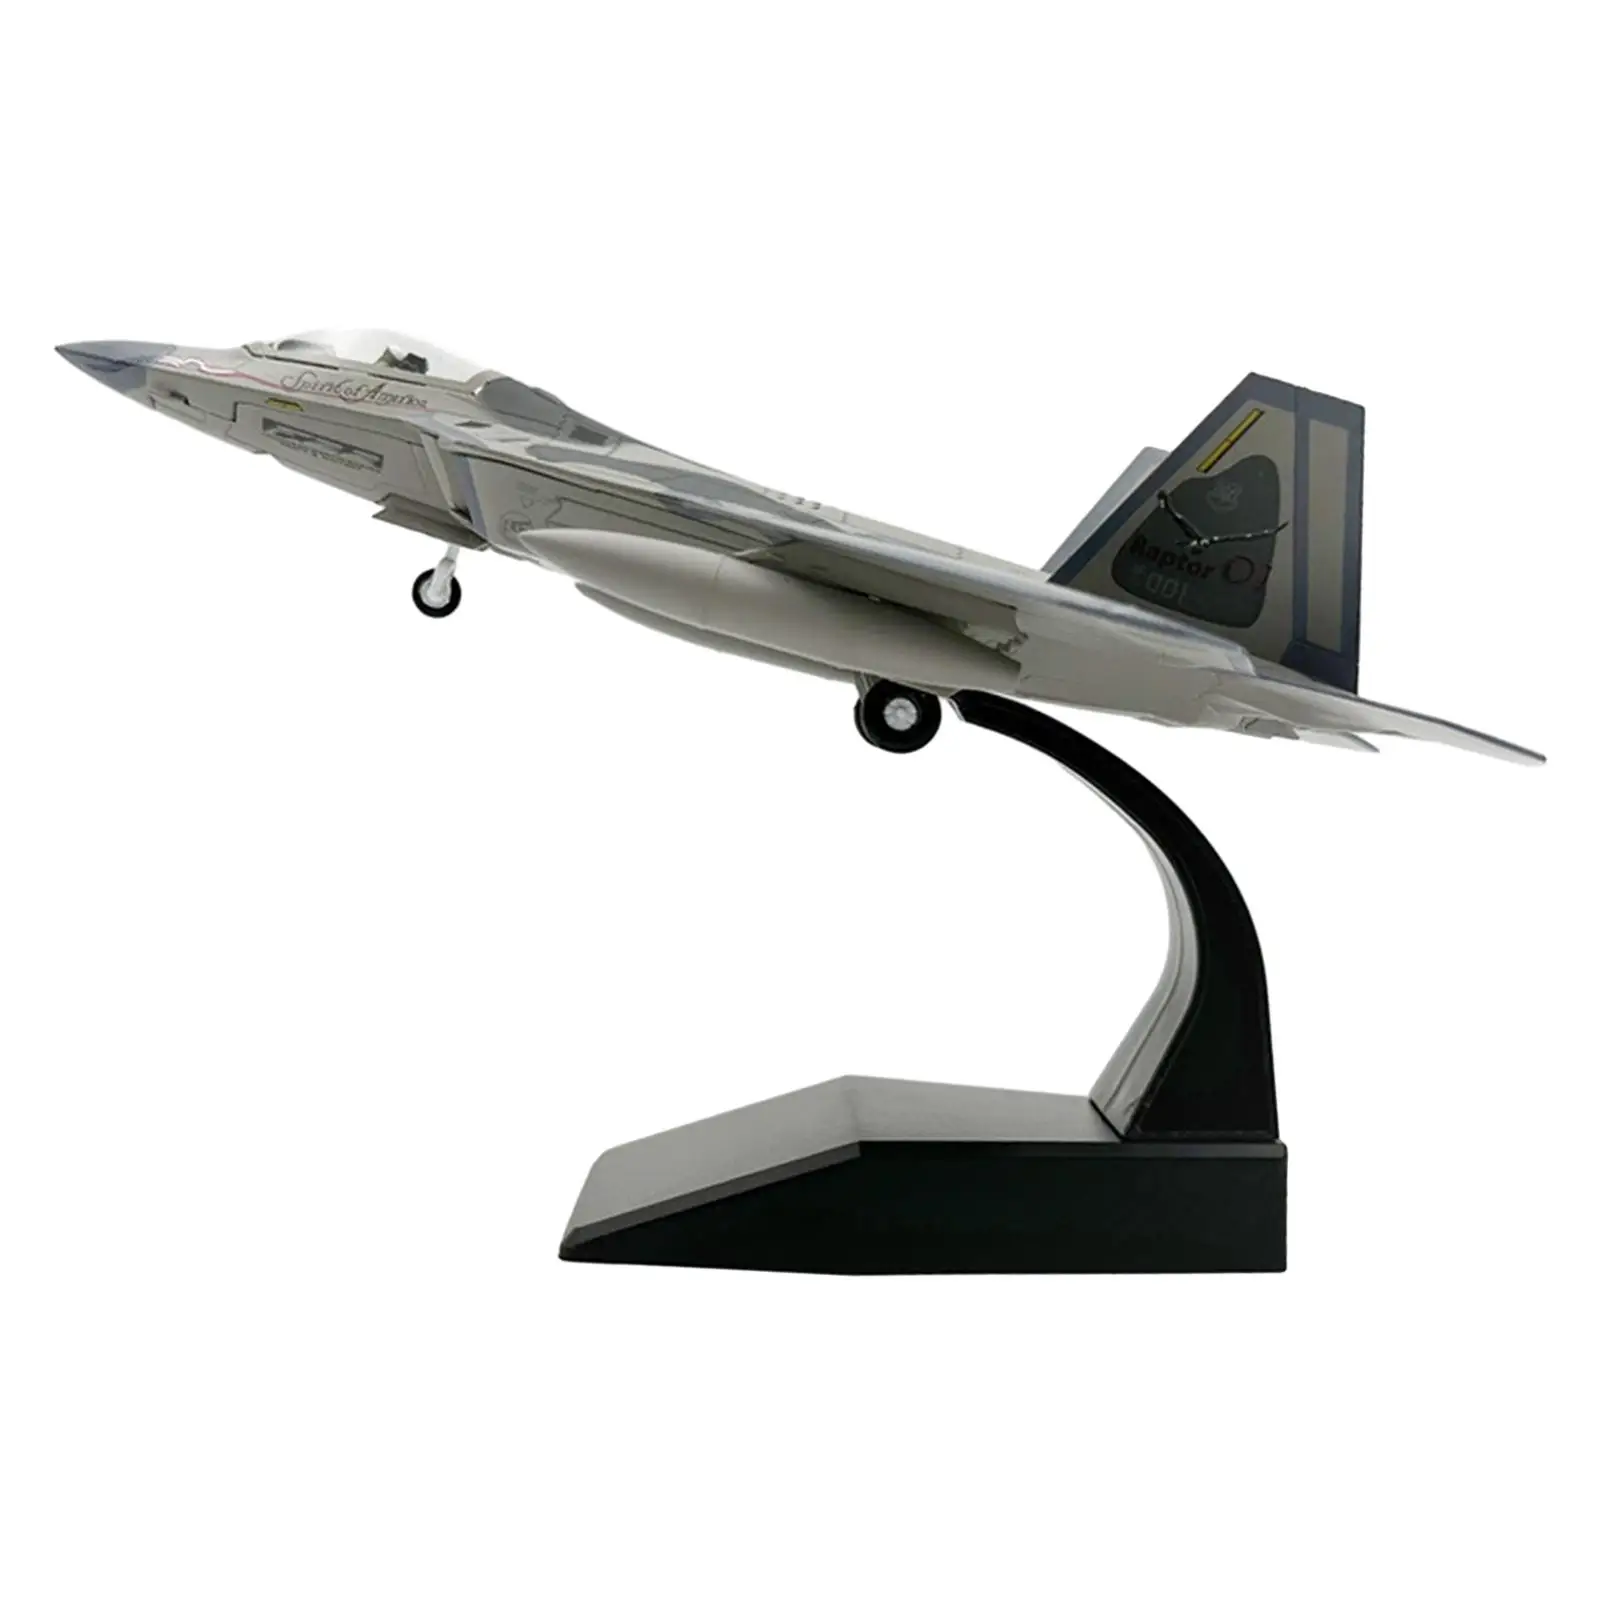 

Литая металлическая модель самолета, авиационная модель в память 1/100 боевых действий, модель для столешницы, спальни, бара, полки